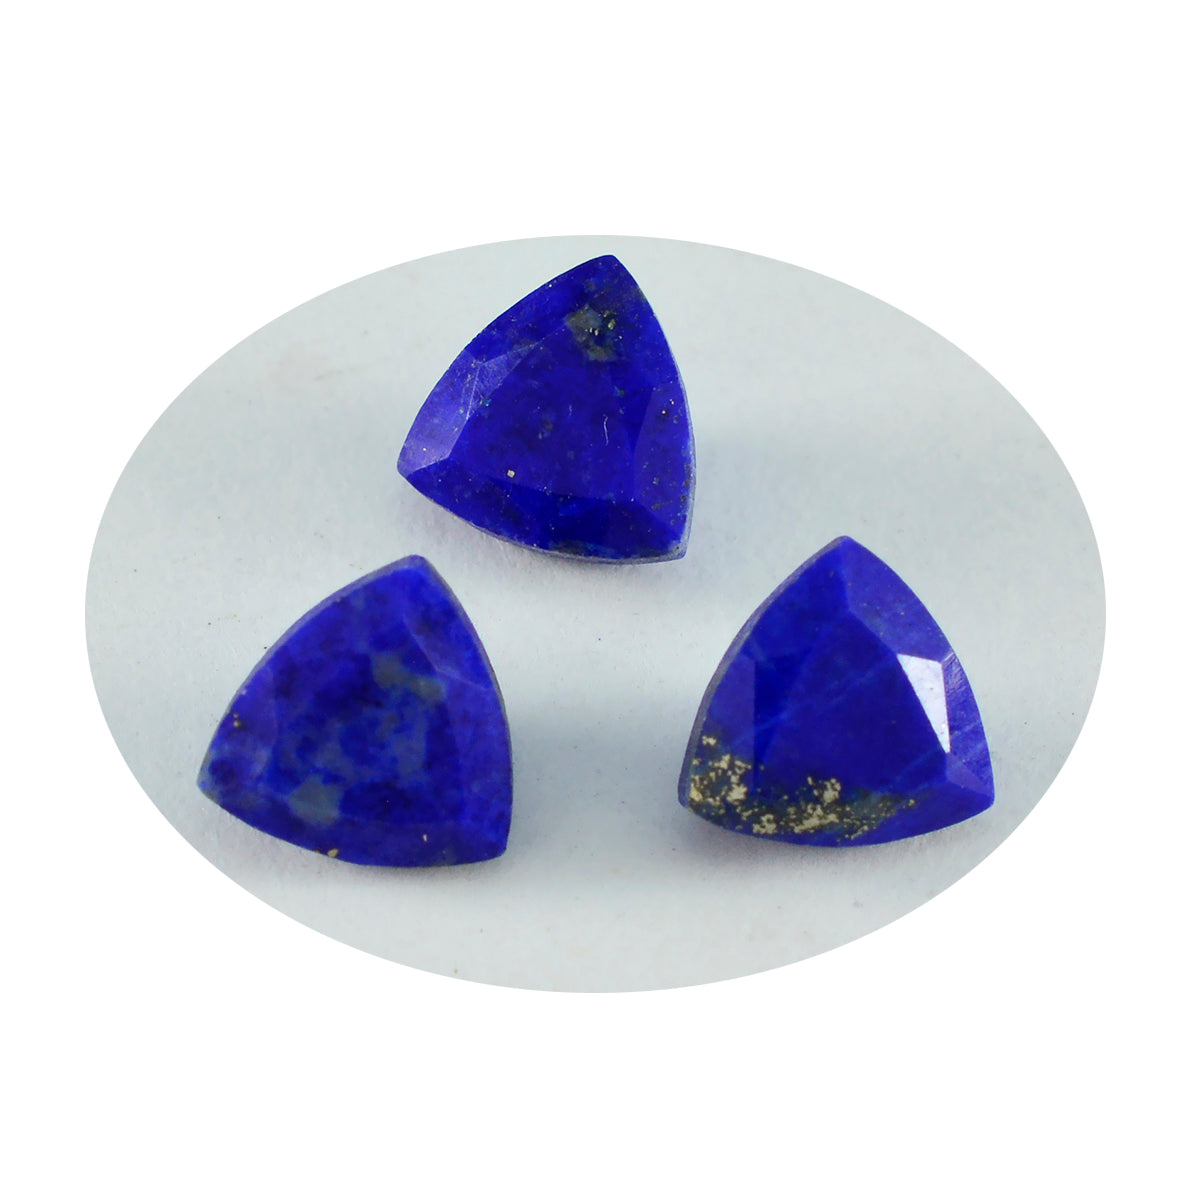 Riyogems 1PC Echte Blauwe Lapis Lazuli Gefacetteerde 12x12 mm Biljoen Vorm AAA Kwaliteit Steen